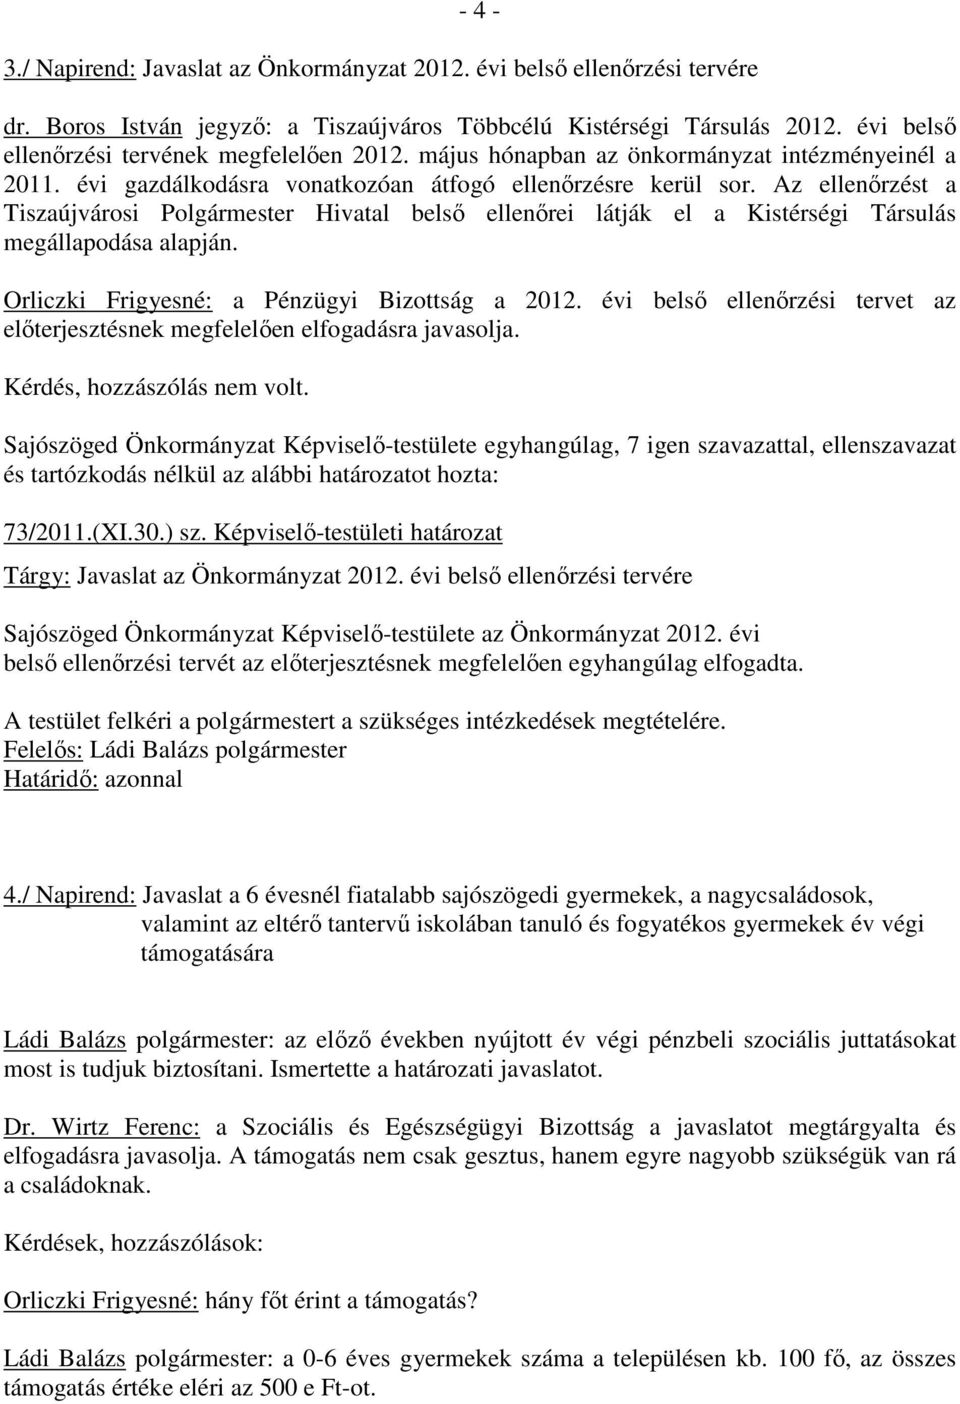 Az ellenırzést a Tiszaújvárosi Polgármester Hivatal belsı ellenırei látják el a Kistérségi Társulás megállapodása alapján. Orliczki Frigyesné: a Pénzügyi Bizottság a 2012.